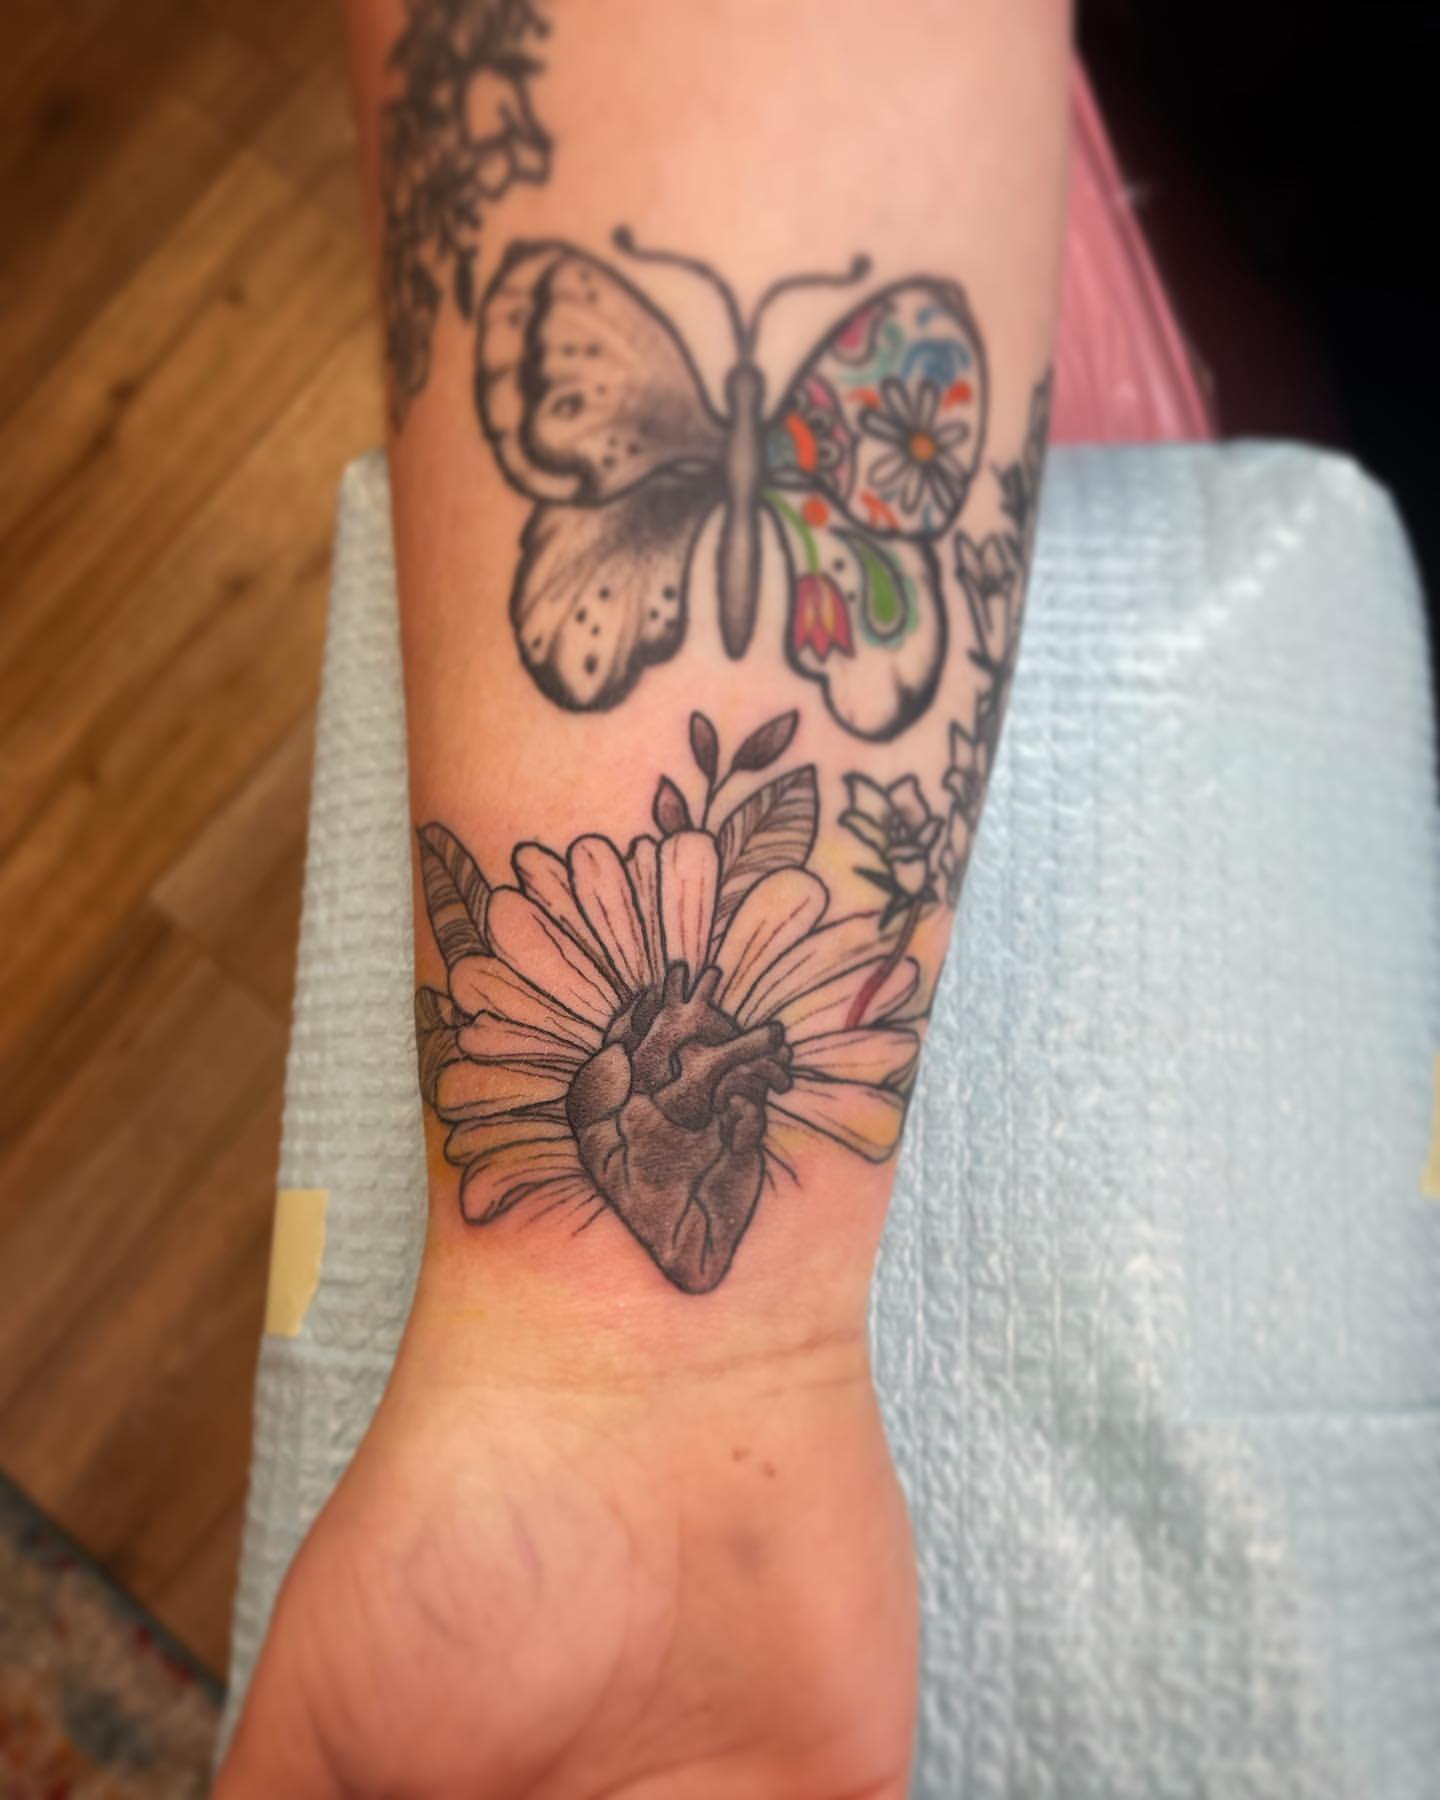 Butterfly Tattoo Ideas